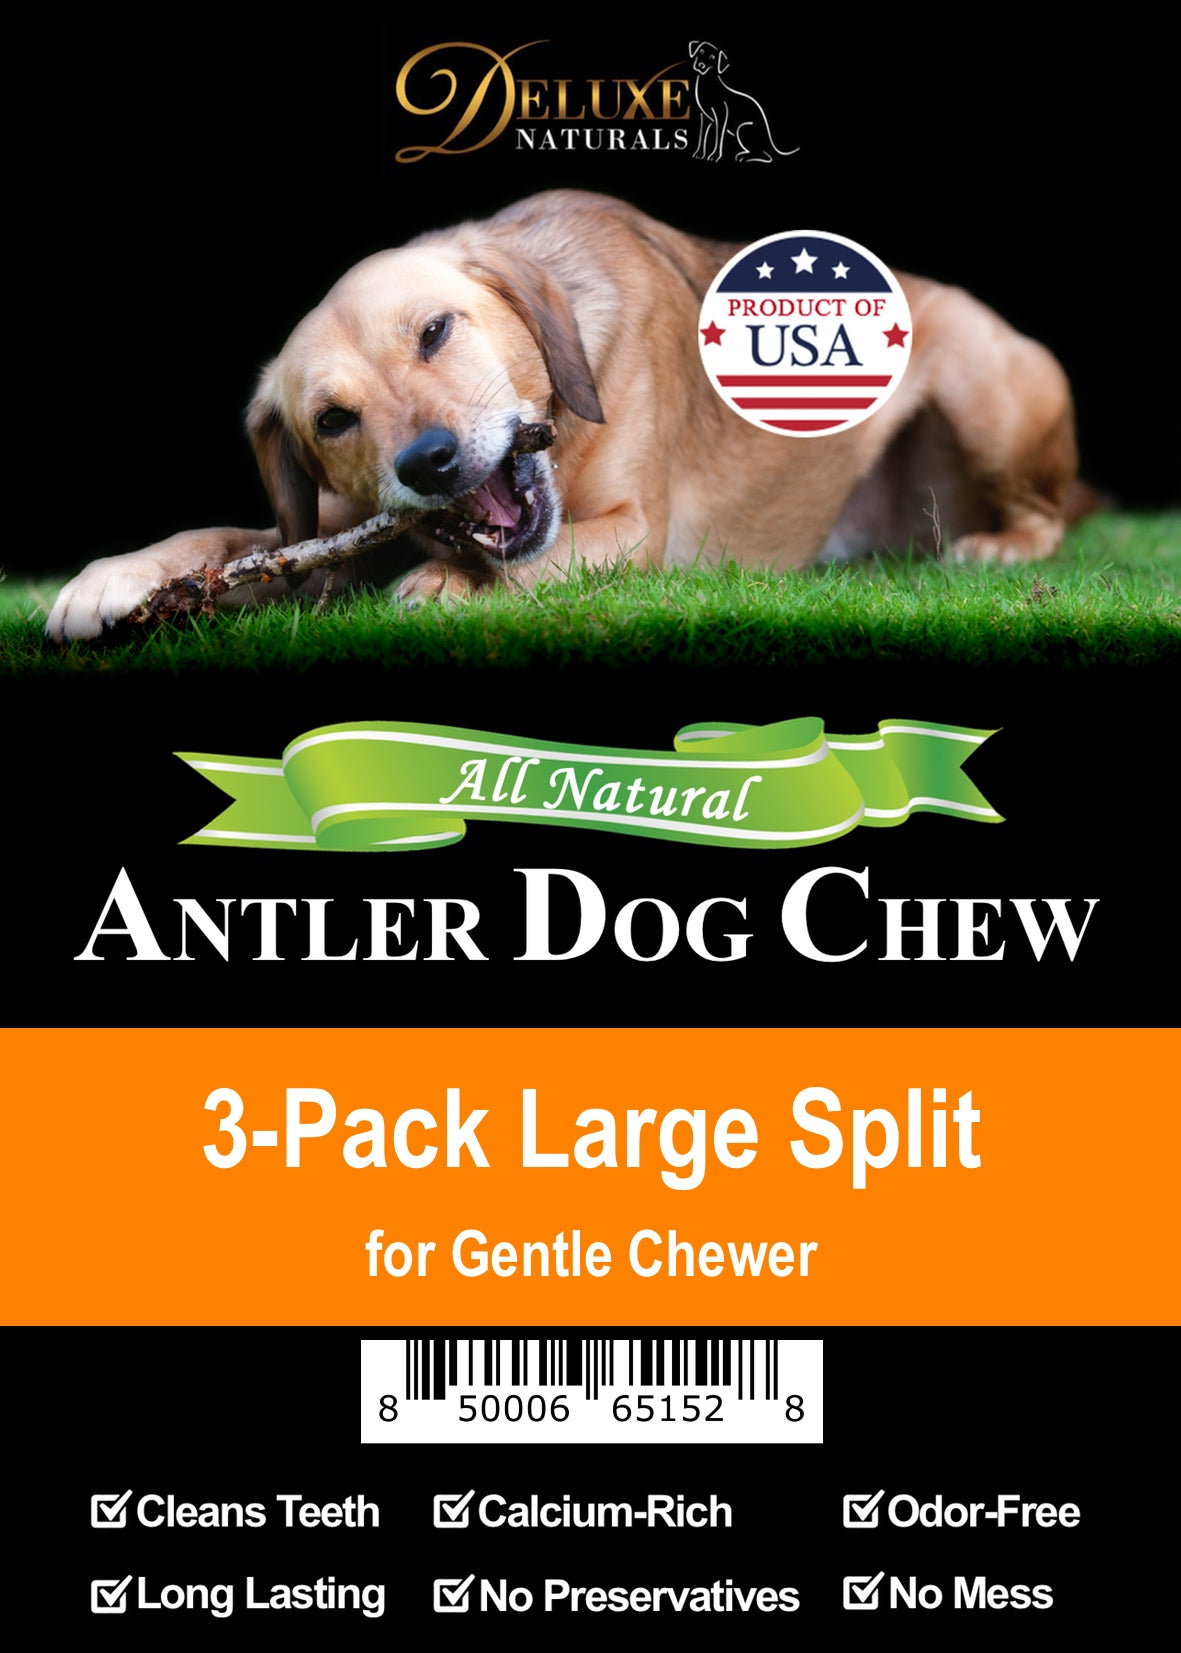 Deluxe Naturals 3-Pack Elk Antler Dog Chew - Large Split